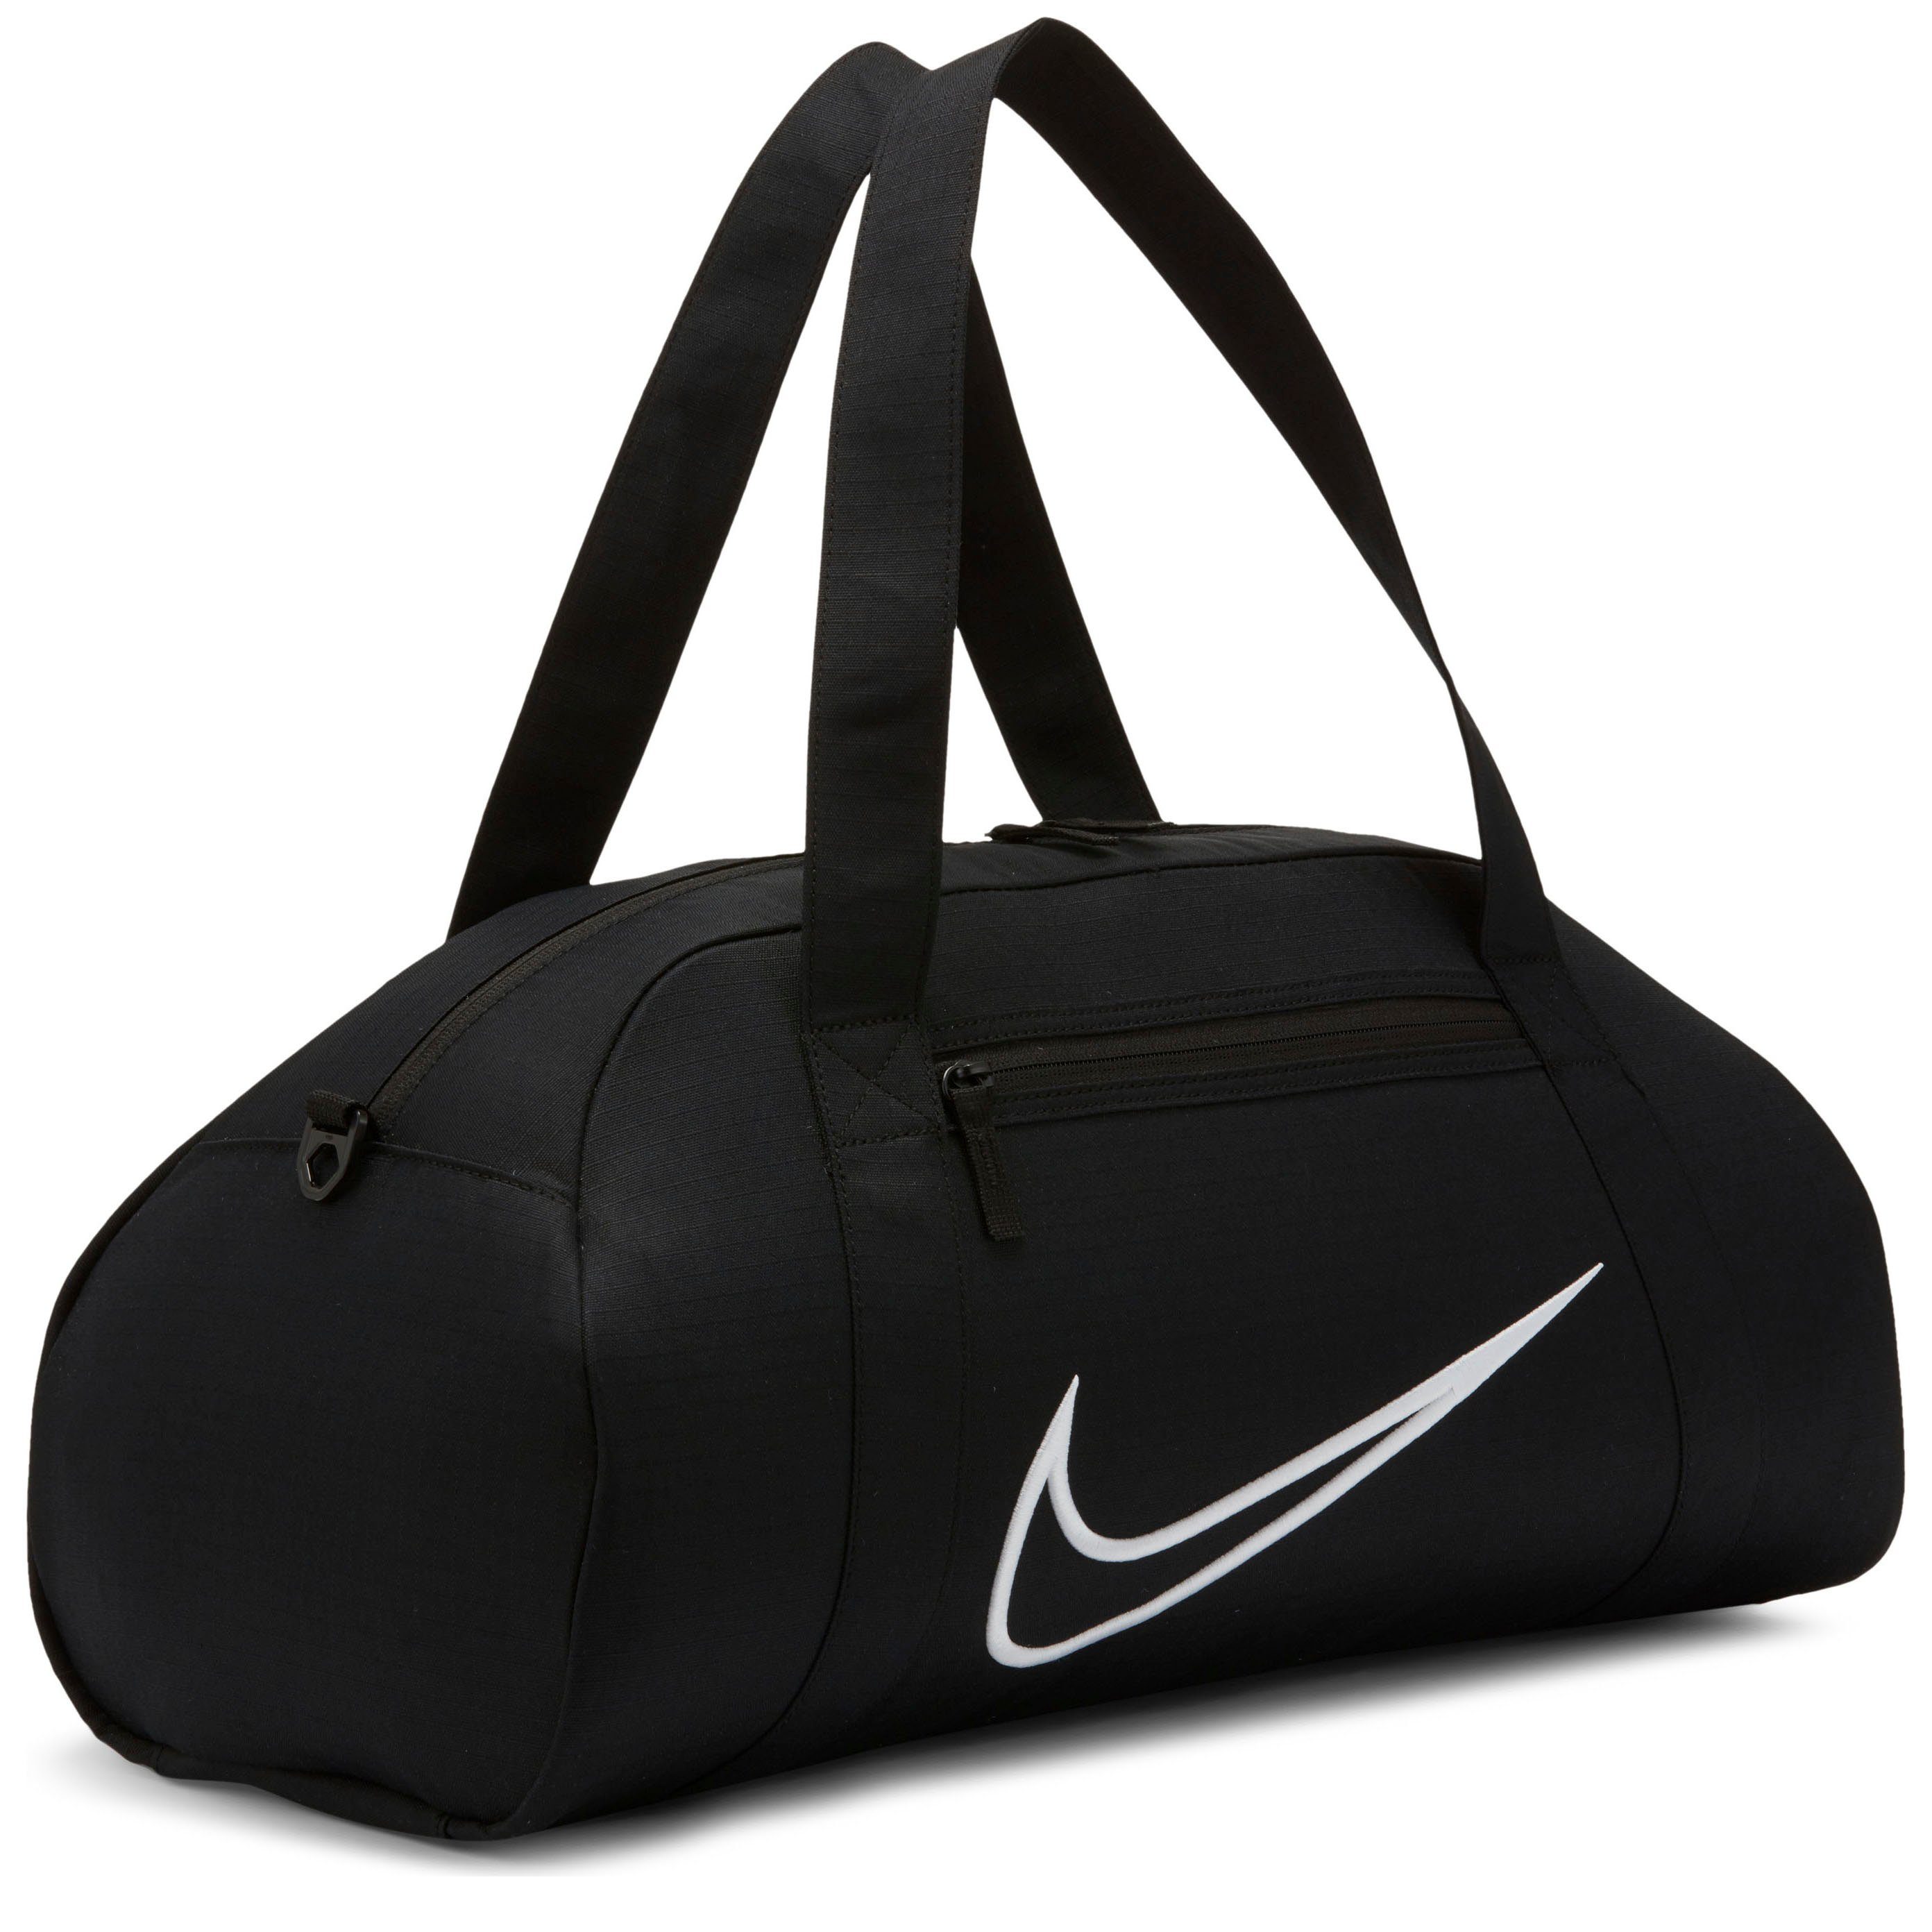 Nike Taschen online kaufen | OTTO